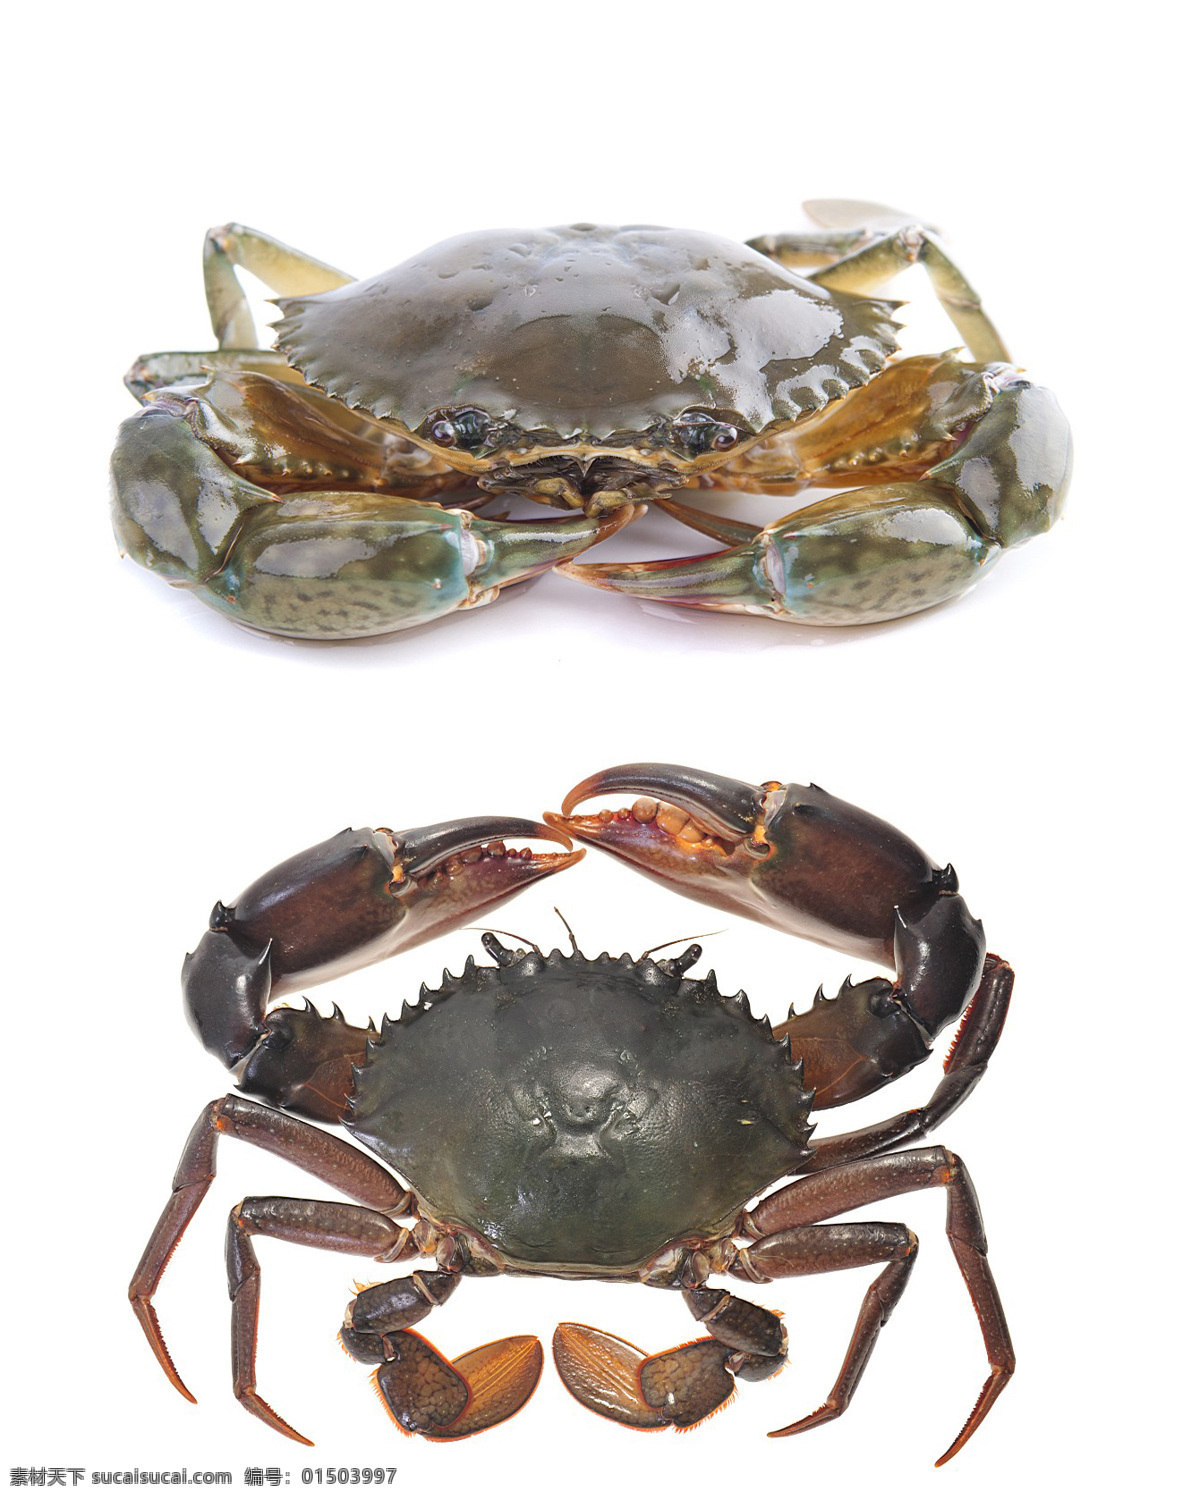 螃蟹 海蟹 食材 花蟹 海鲜 海产品 海洋生物 节肢动物 食物原料 餐饮美食